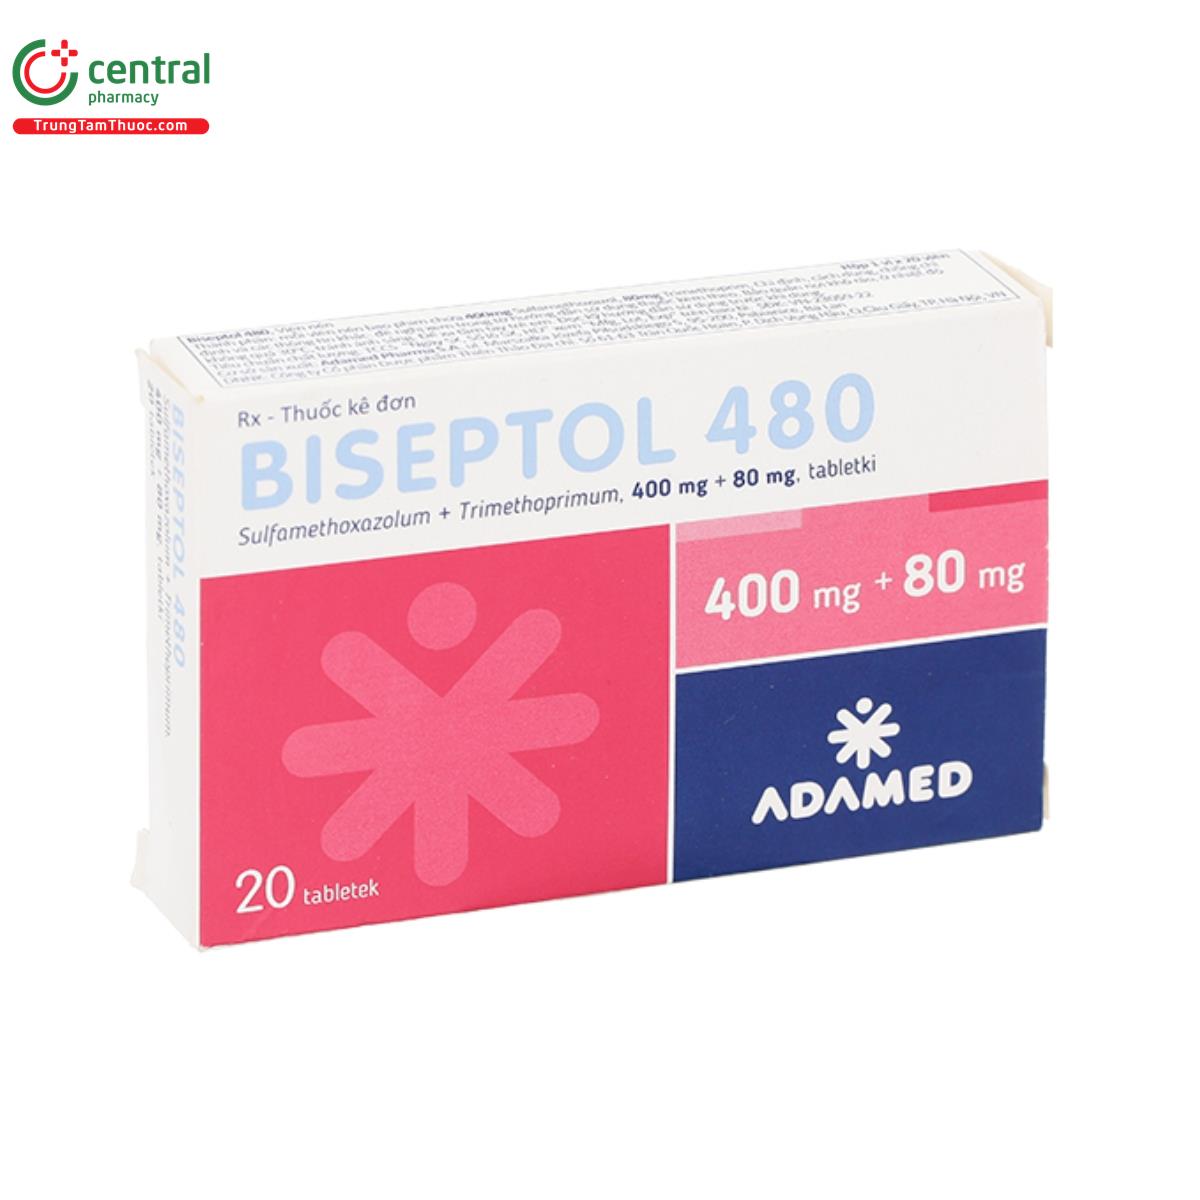 biseptol 480 adamed 4 P6775